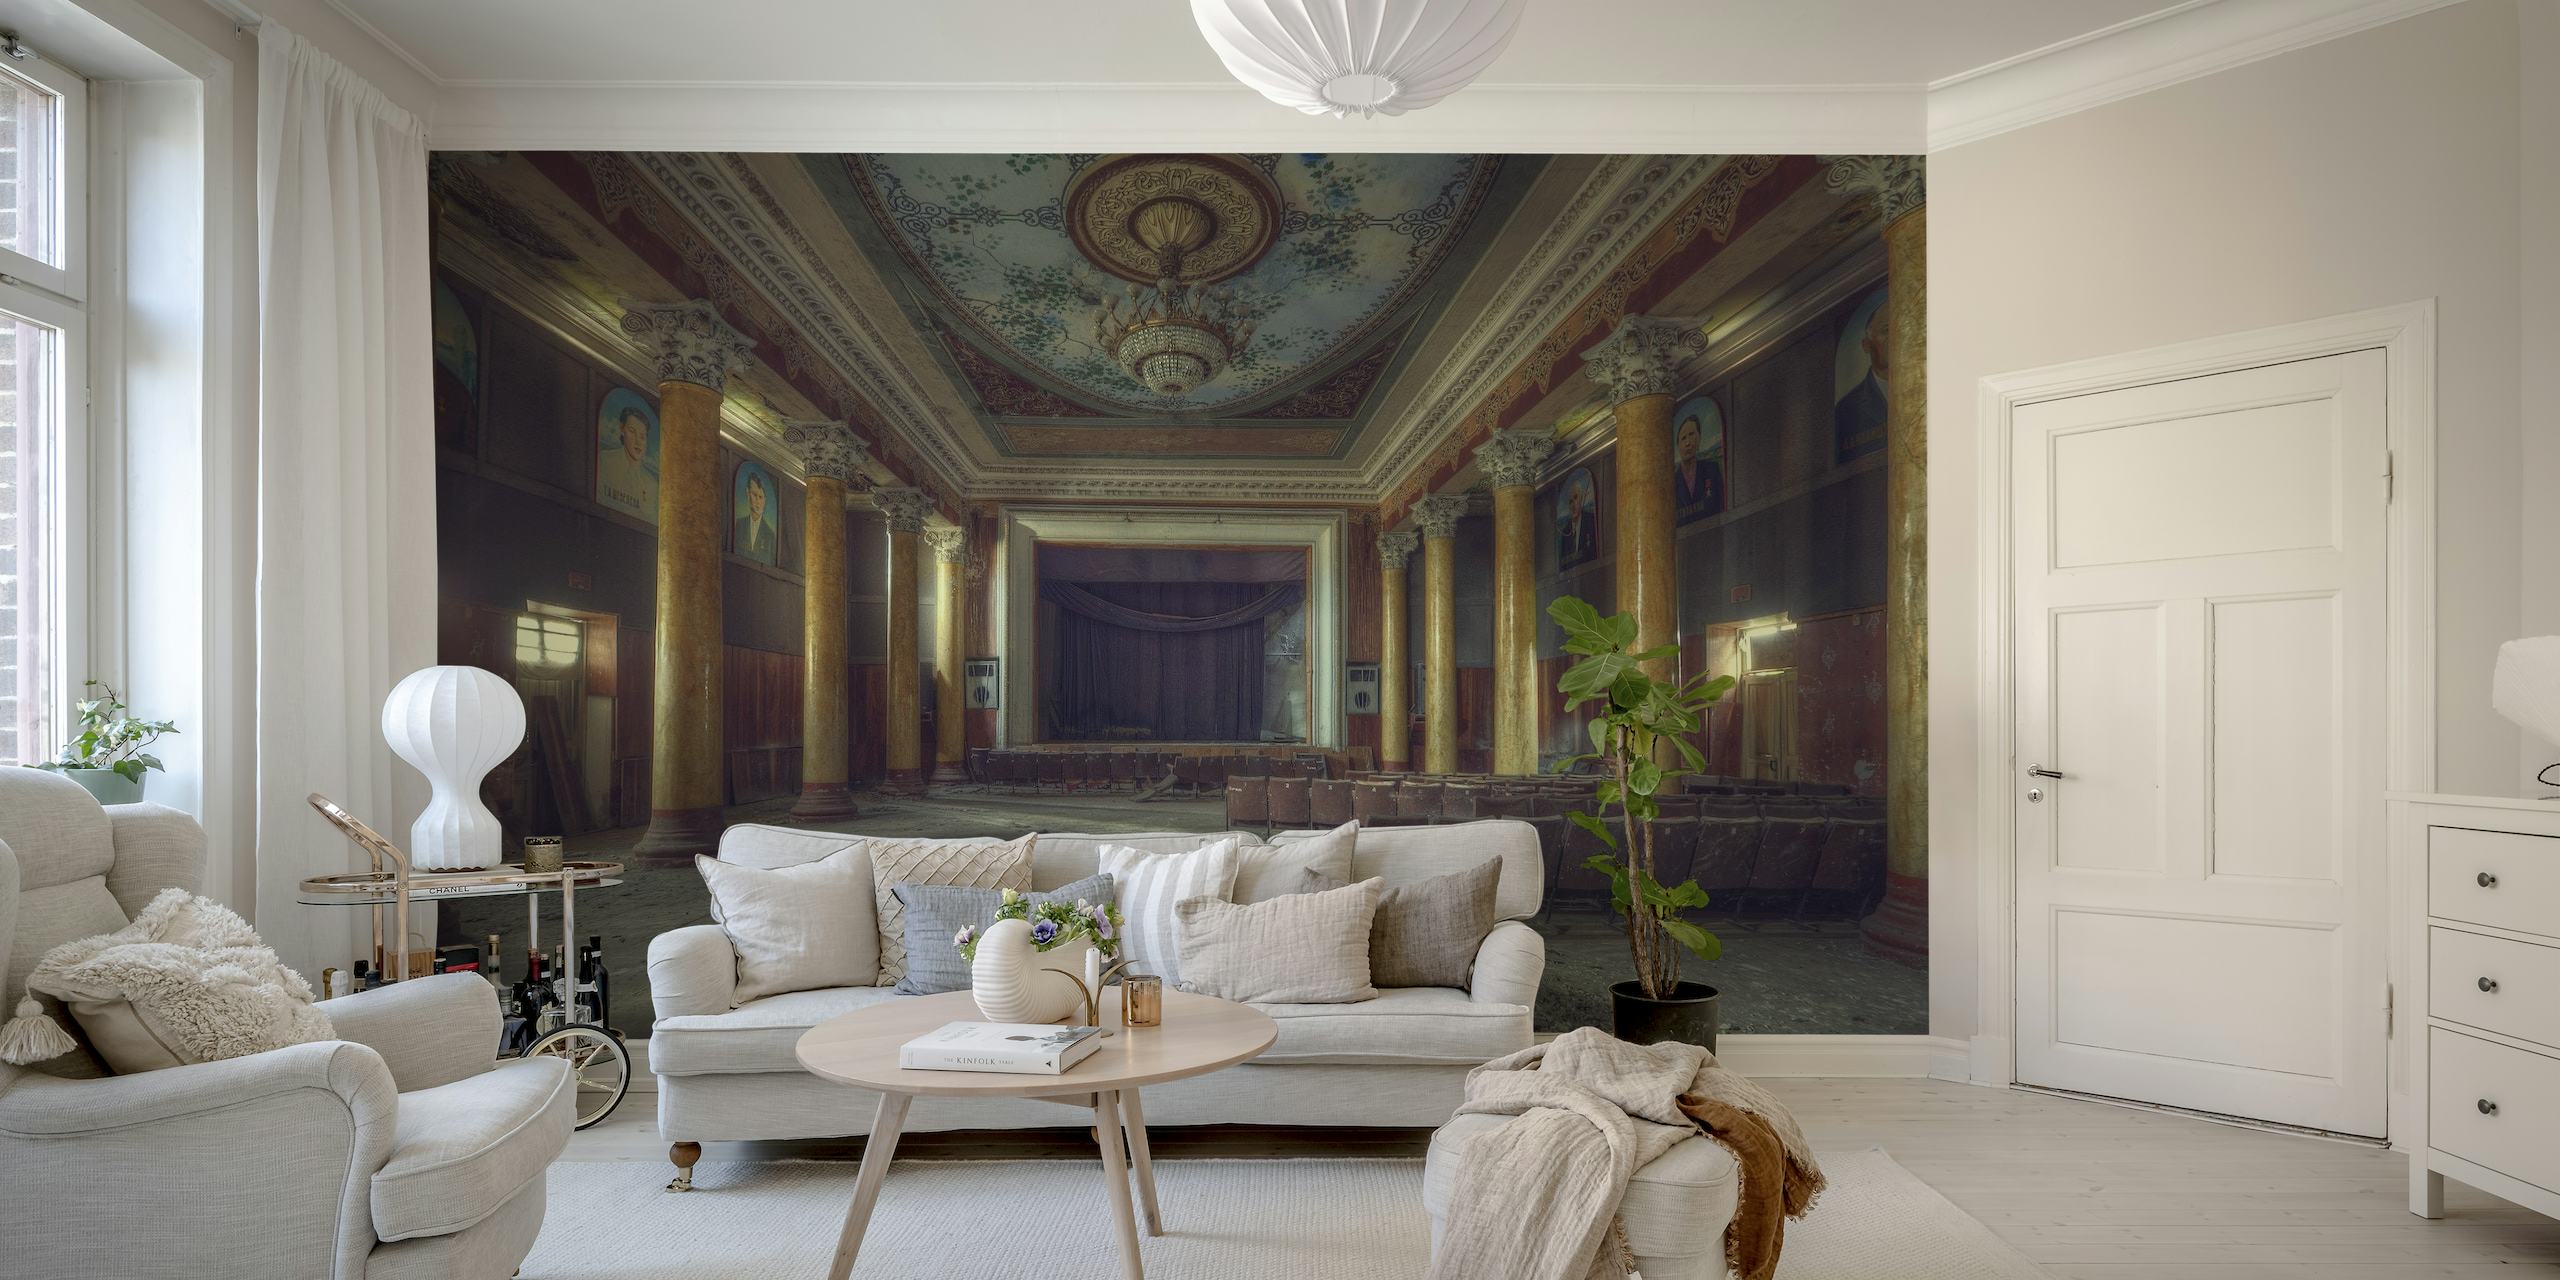 Muurschildering in vintage-stijl van een verlaten grote zaal met sierlijke architectonische details